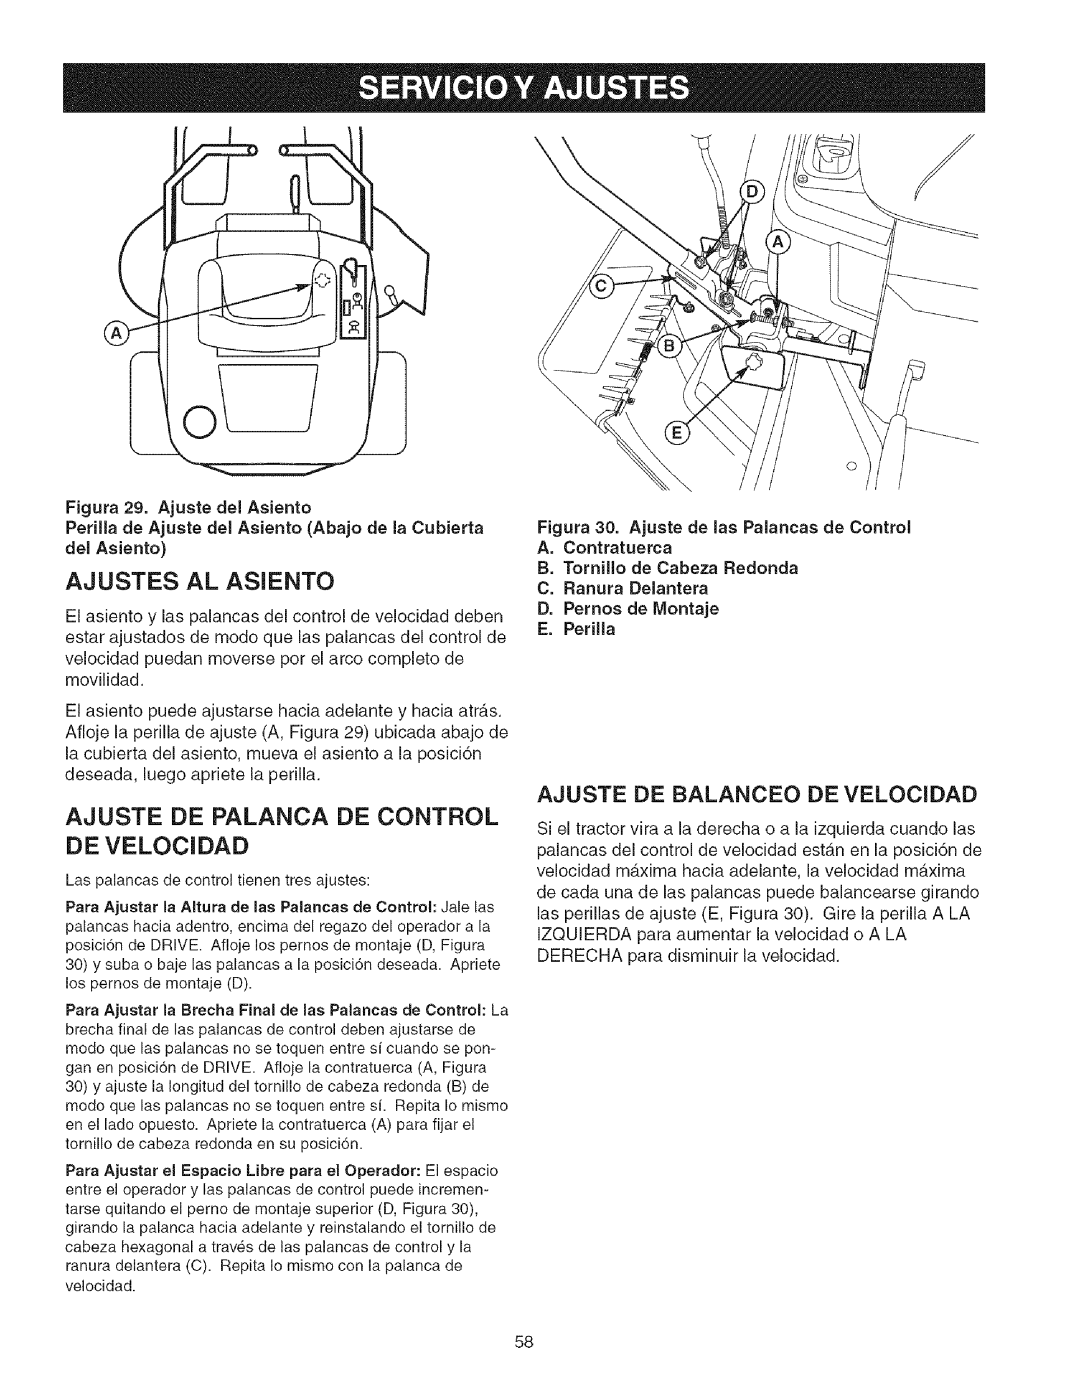 Craftsman 107.2777 manual Ajustes Al Asiento, Ajuste De Palanca De Control, Ajuste De Balanceo De Velocidad 